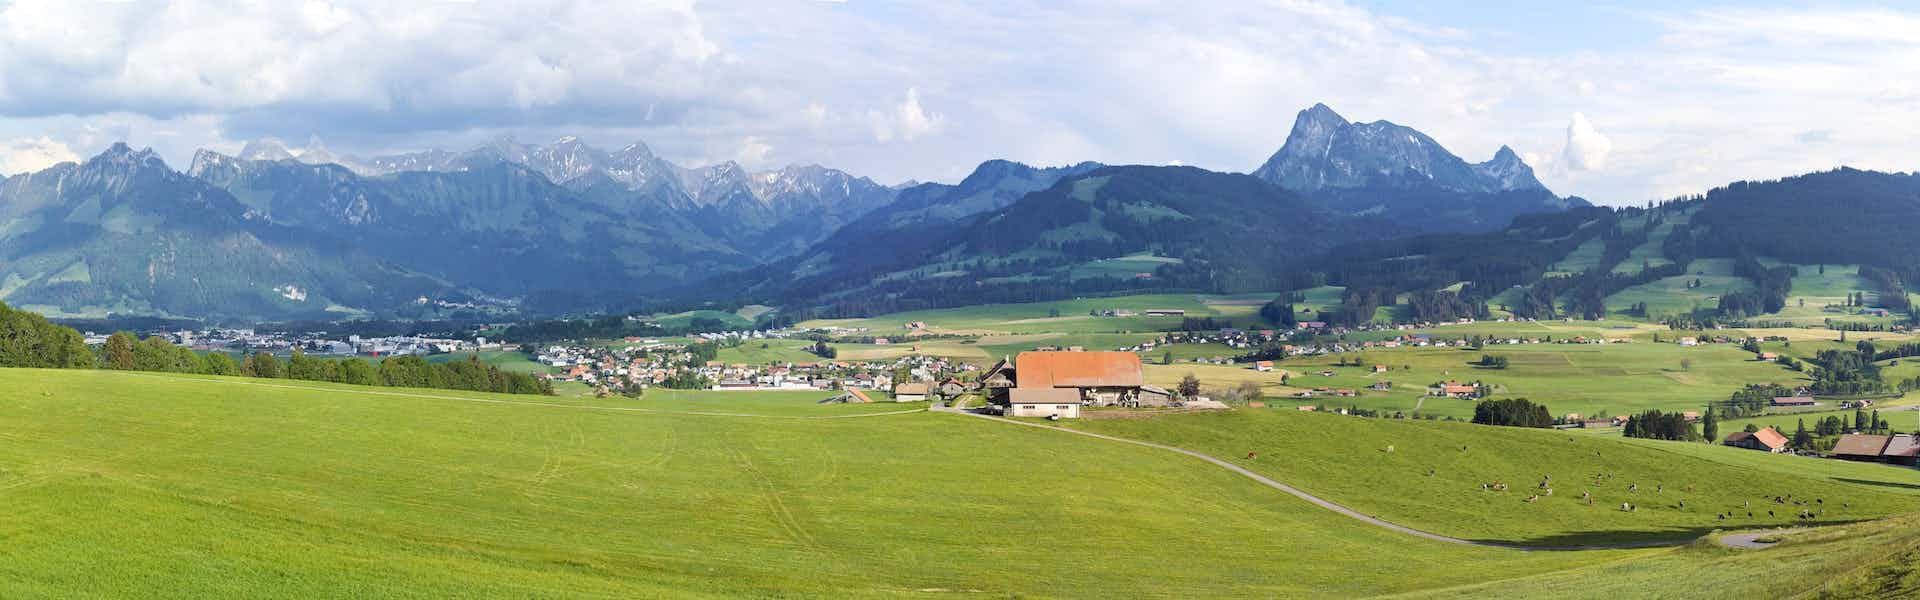 Ferme du Comté, producteur à La Tour-de-Trême canton de Fribourg en Suisse